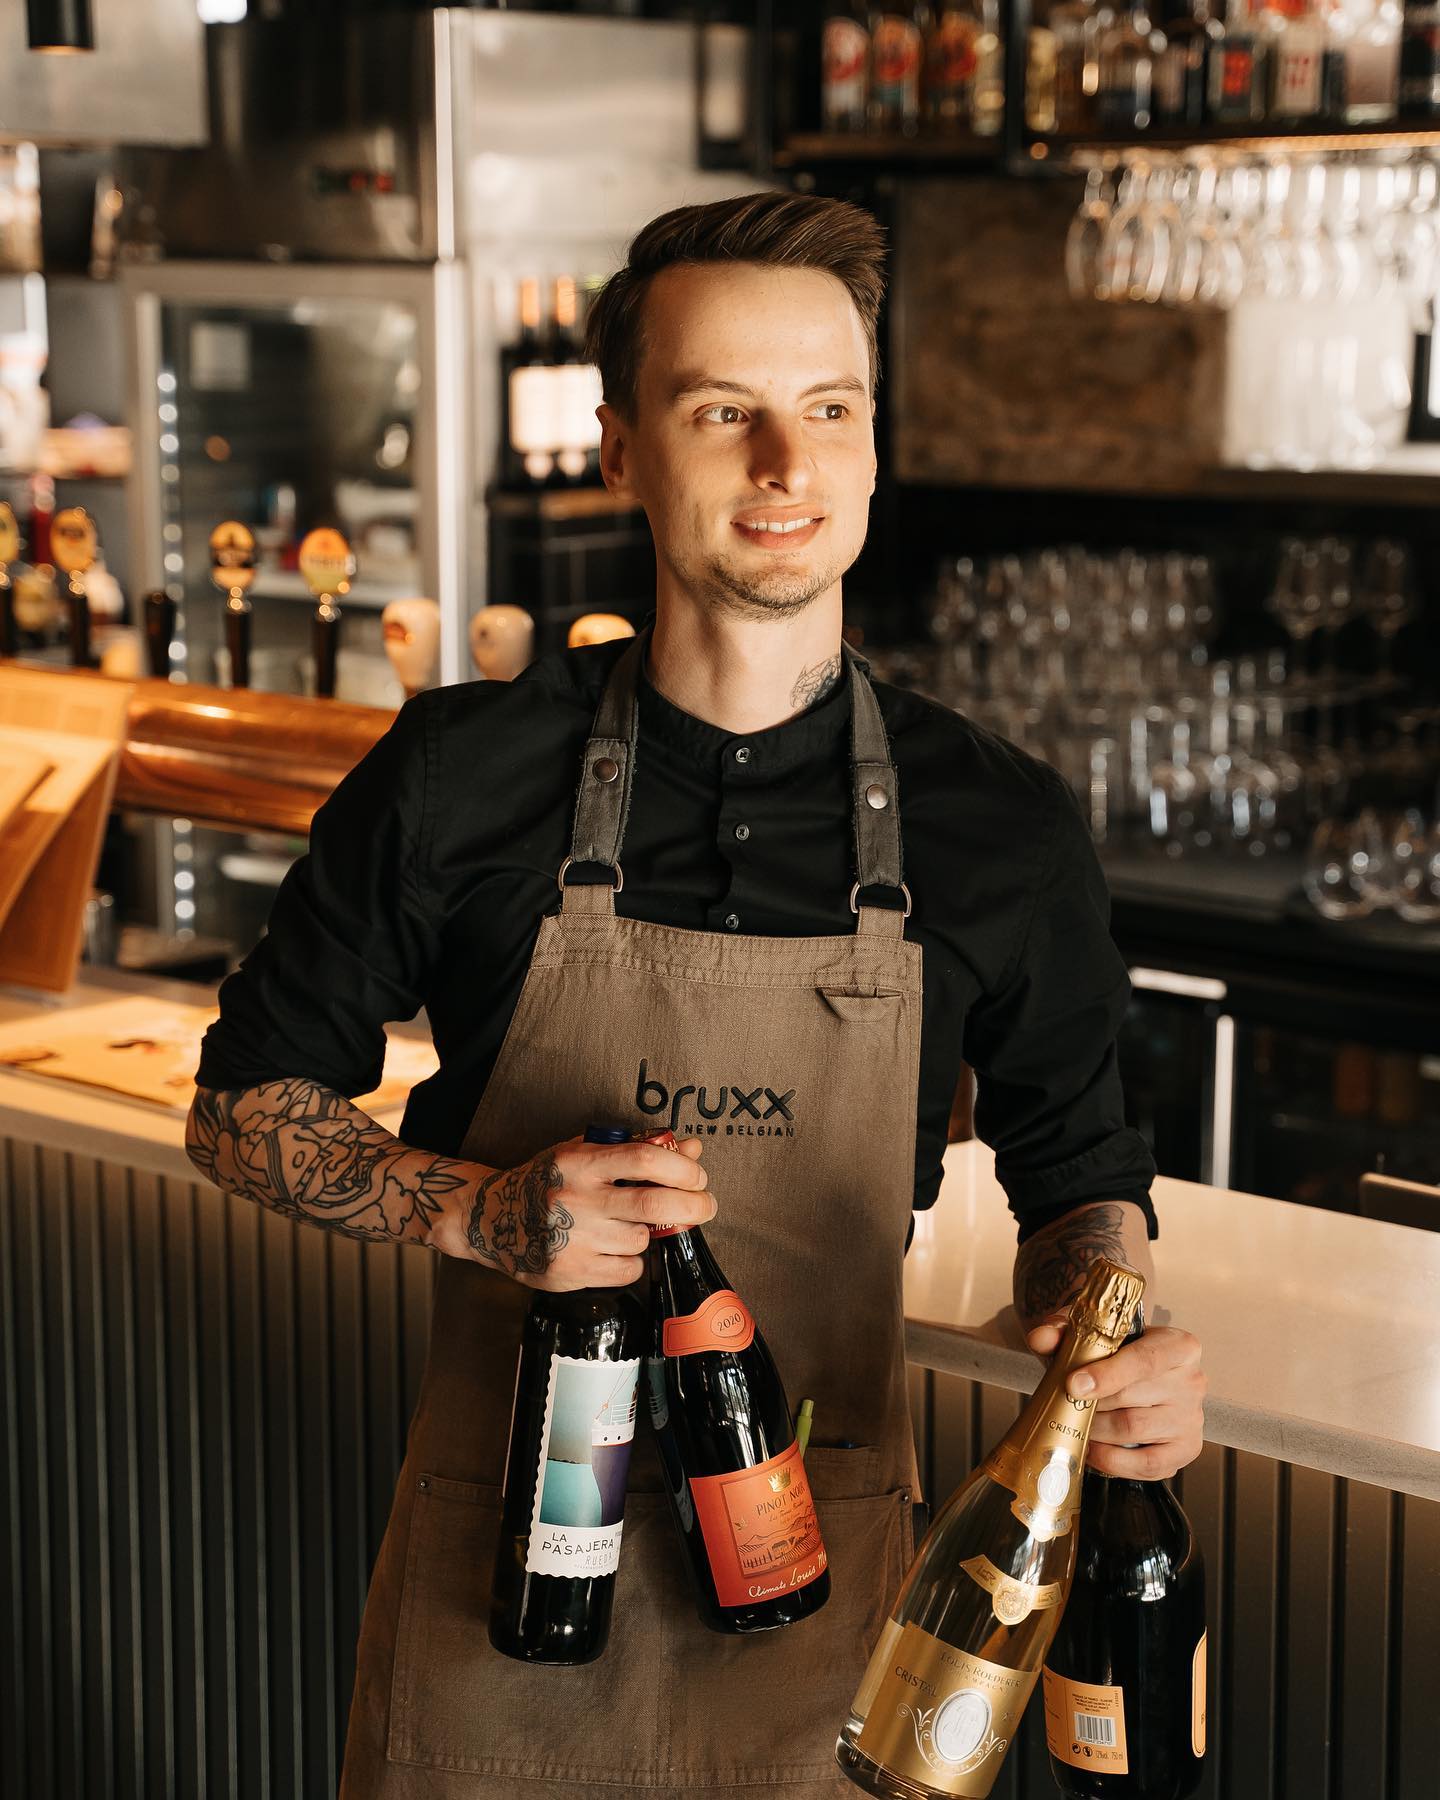 Restaurant Bruxx - New Belgian, a waiter holding drinks